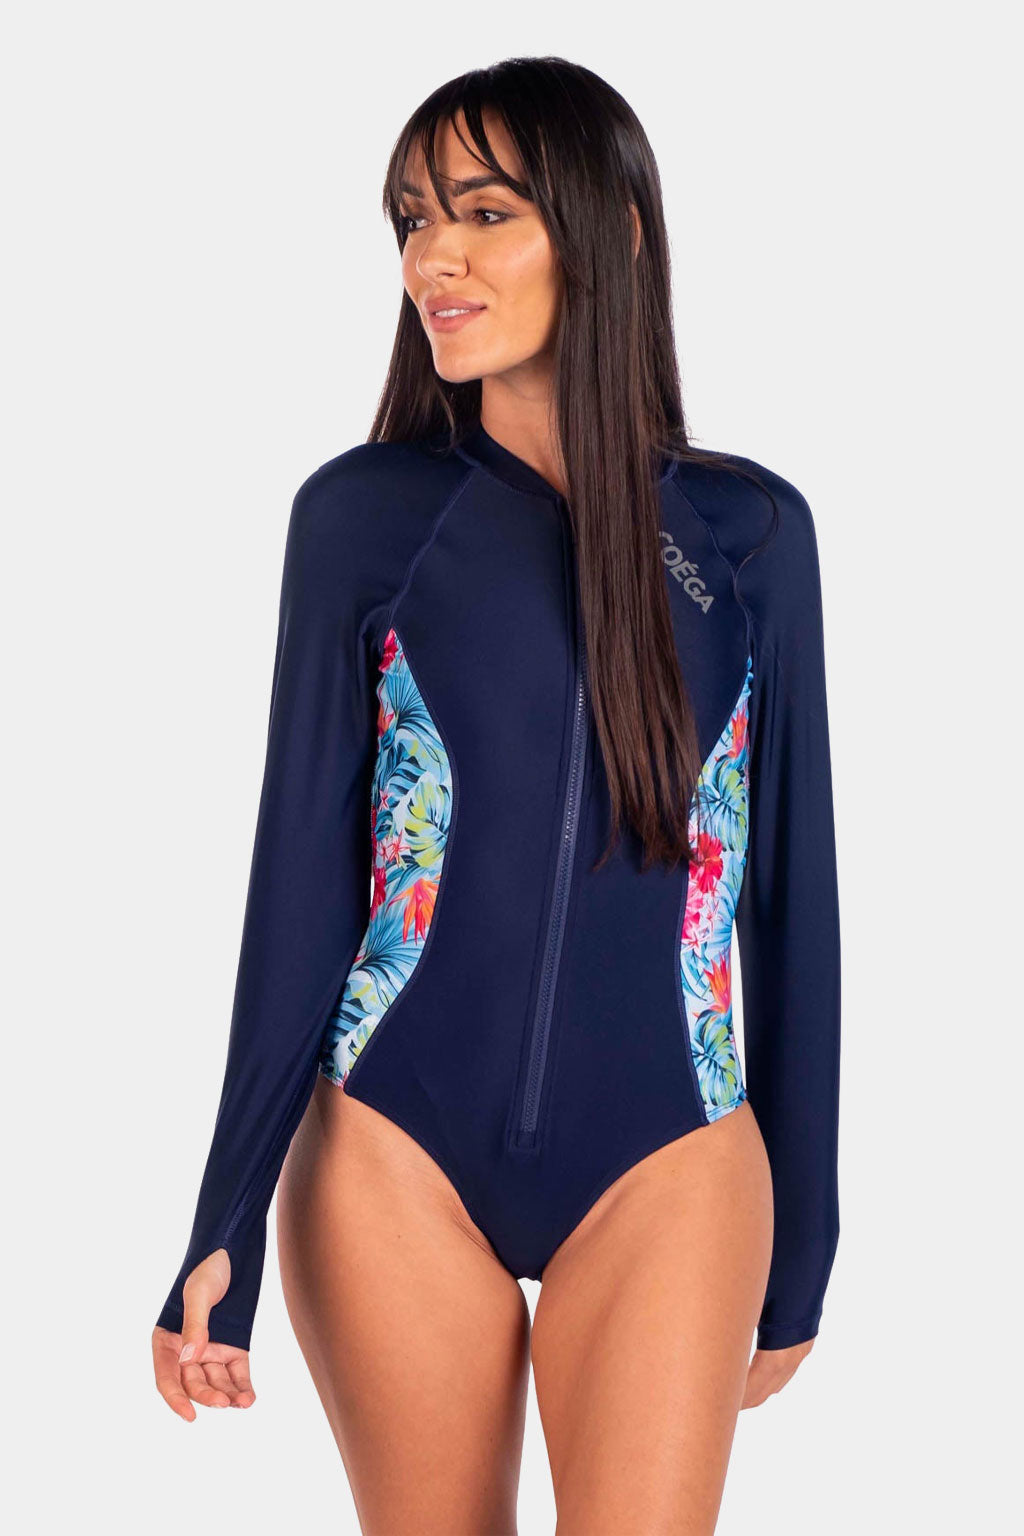 Coega - Ladies Surf Swim Suit